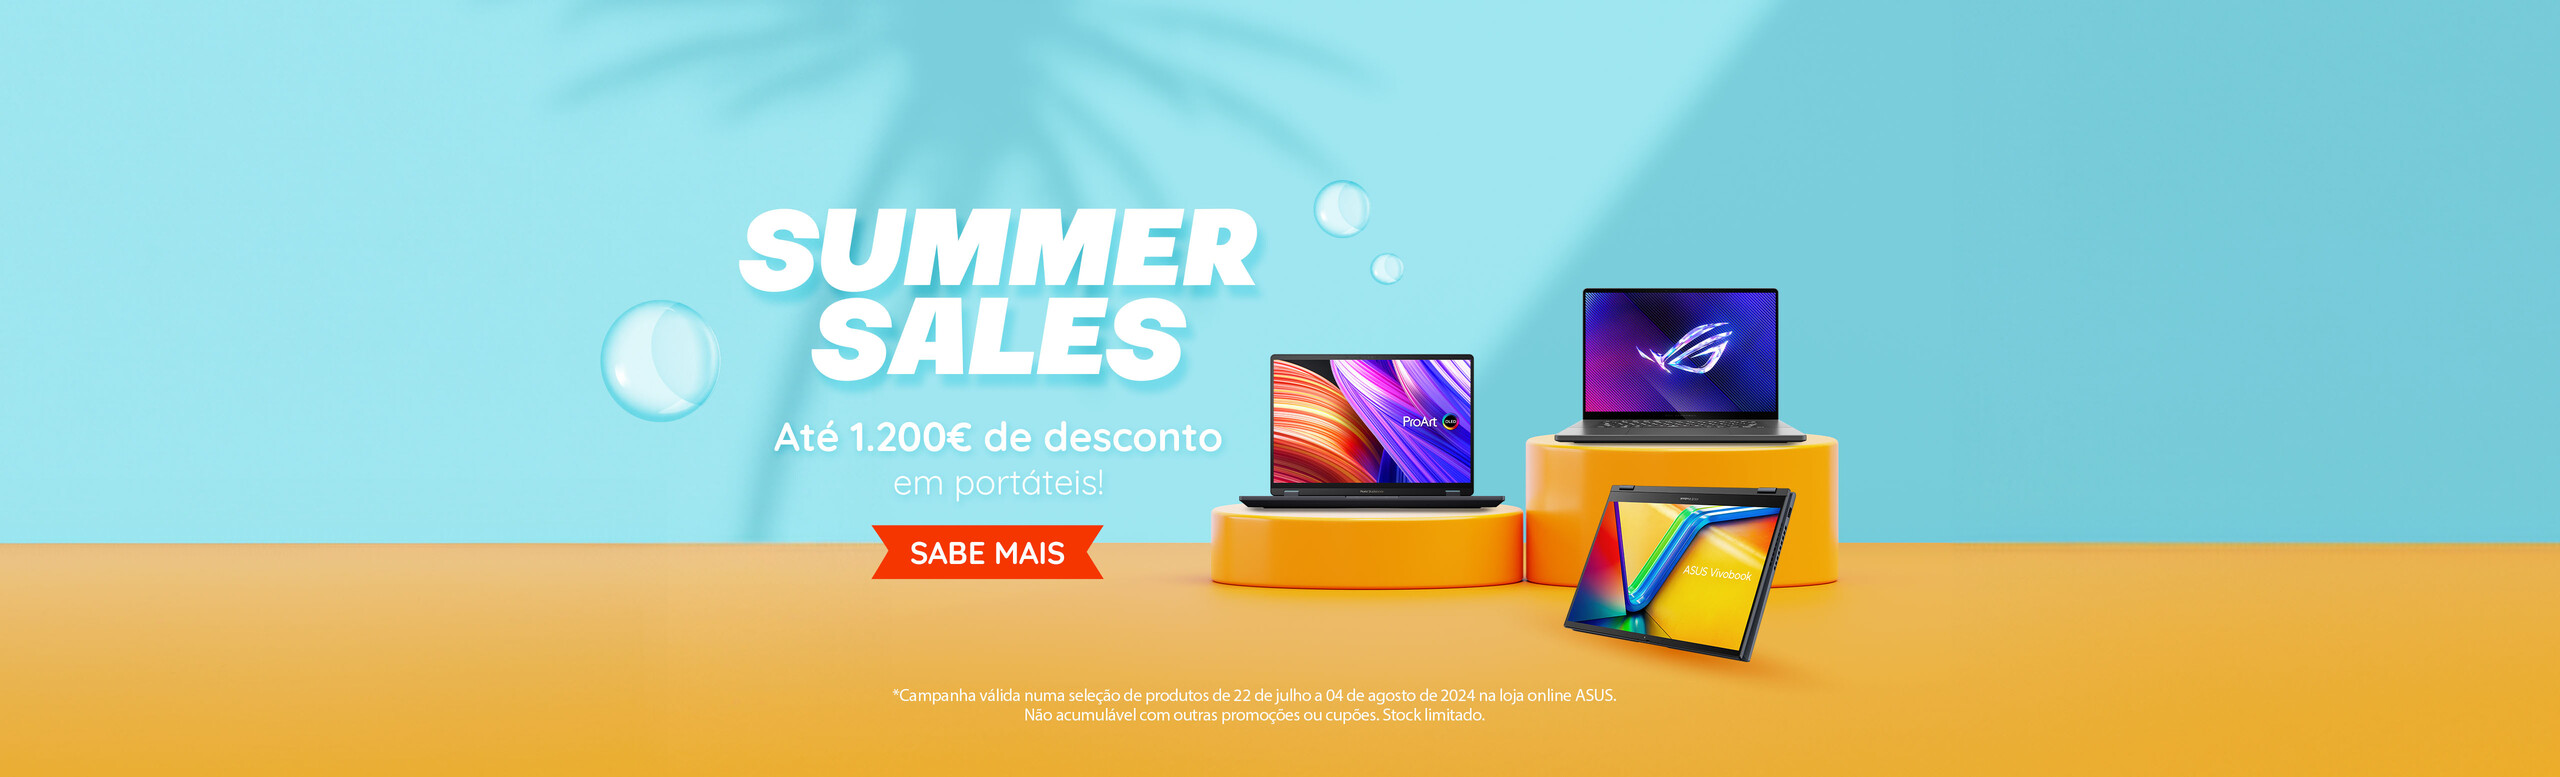 eShop Summer Sales